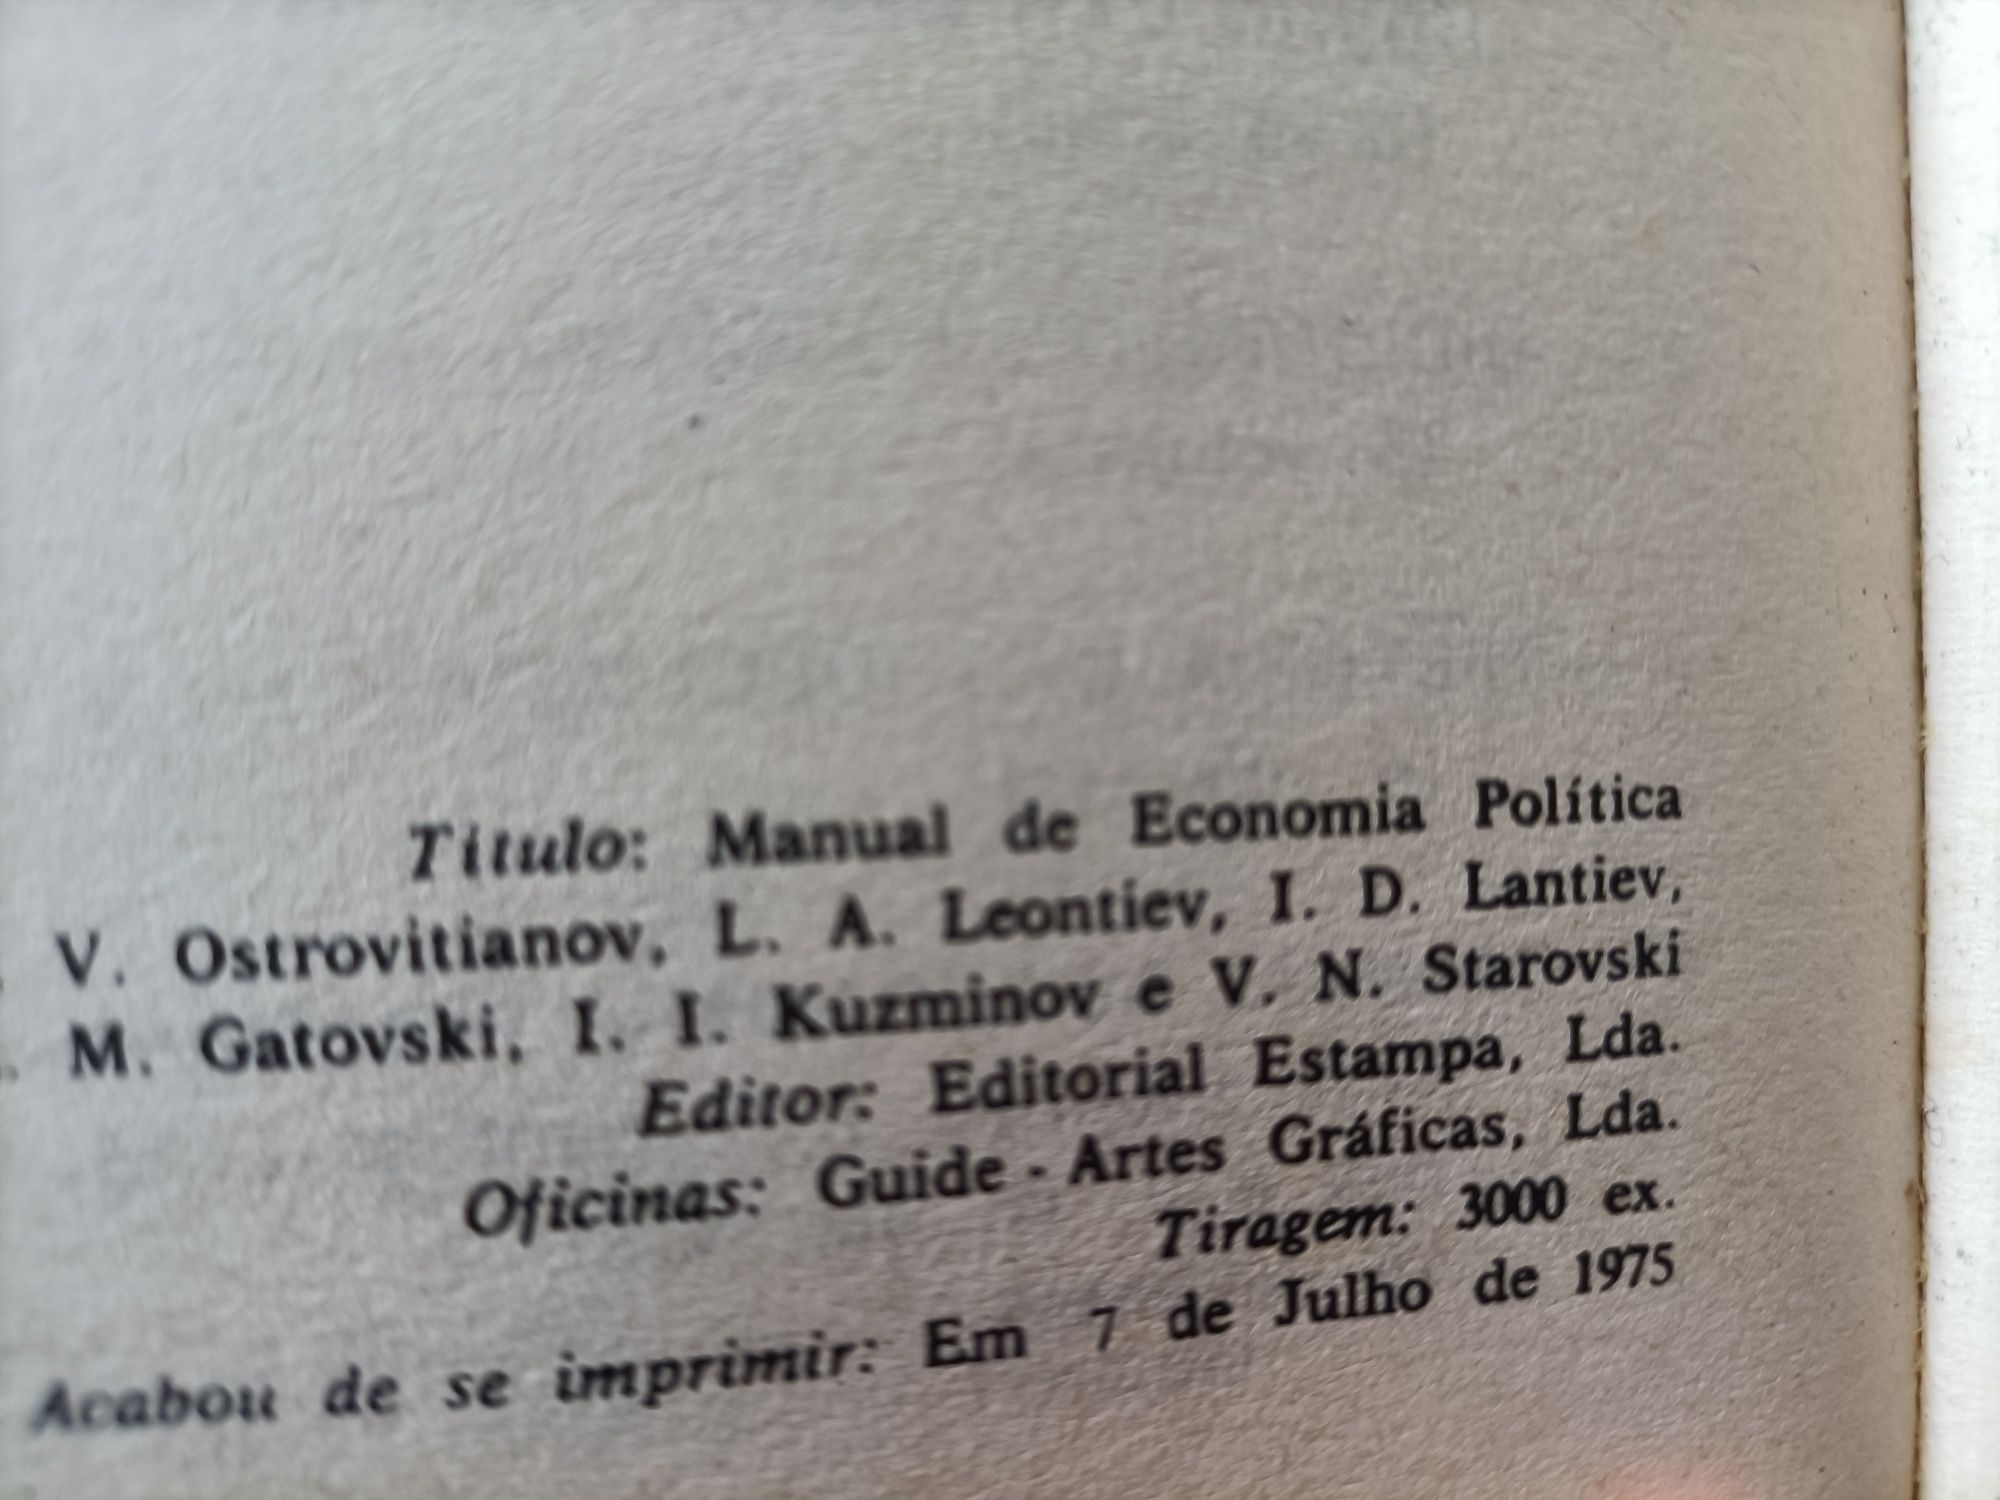 Manual de economia do ano 1972